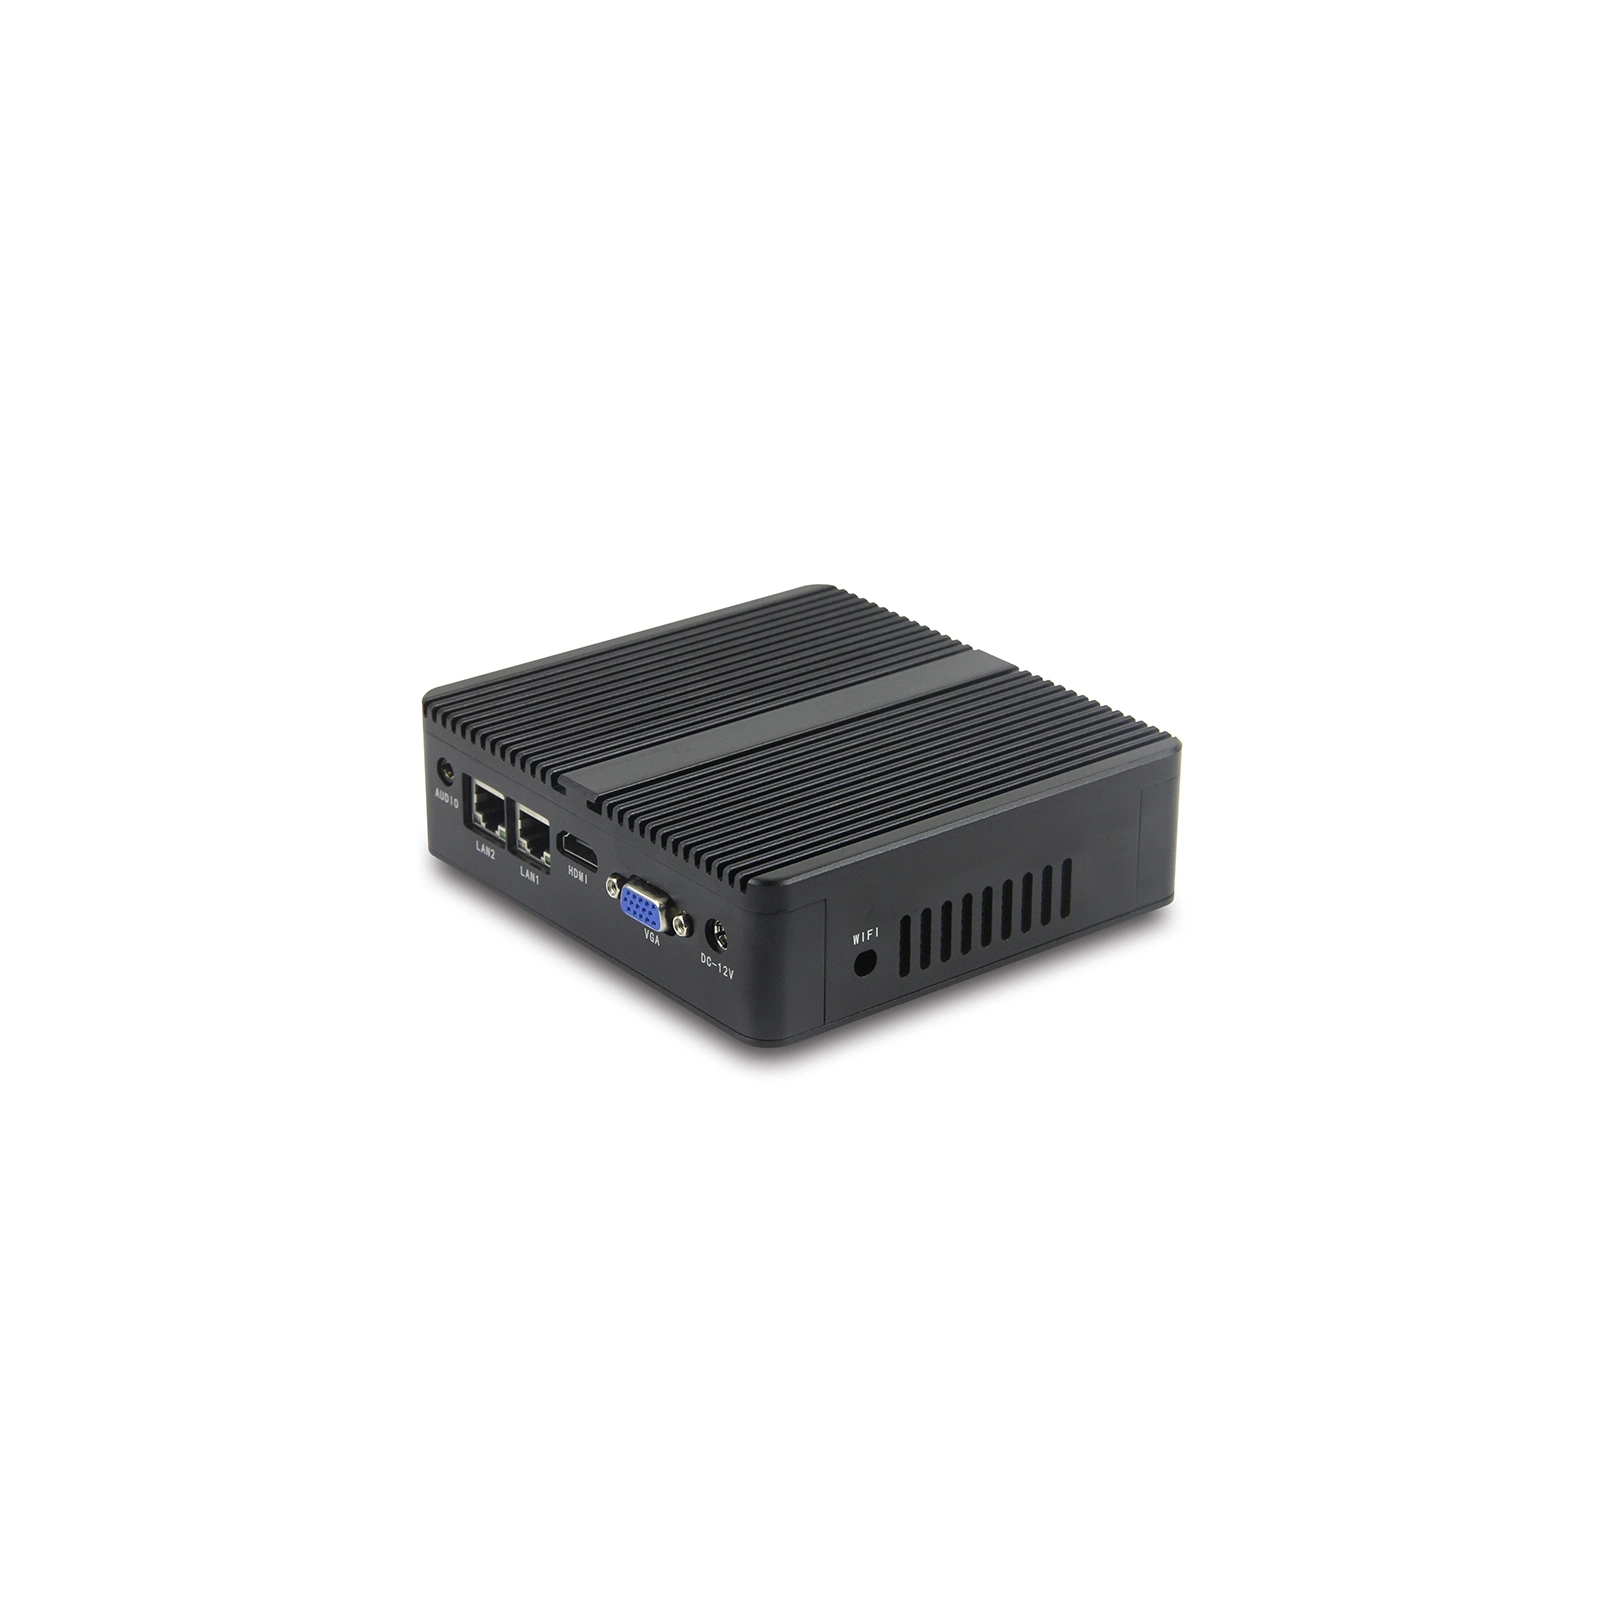 Промышленный ПК Syncotek GOLE BOX-1 J4125/4GB/128GB SSD/USBx4/RS232x2/LANx2VGA/HDMI (S-PC-0089) изображение 3